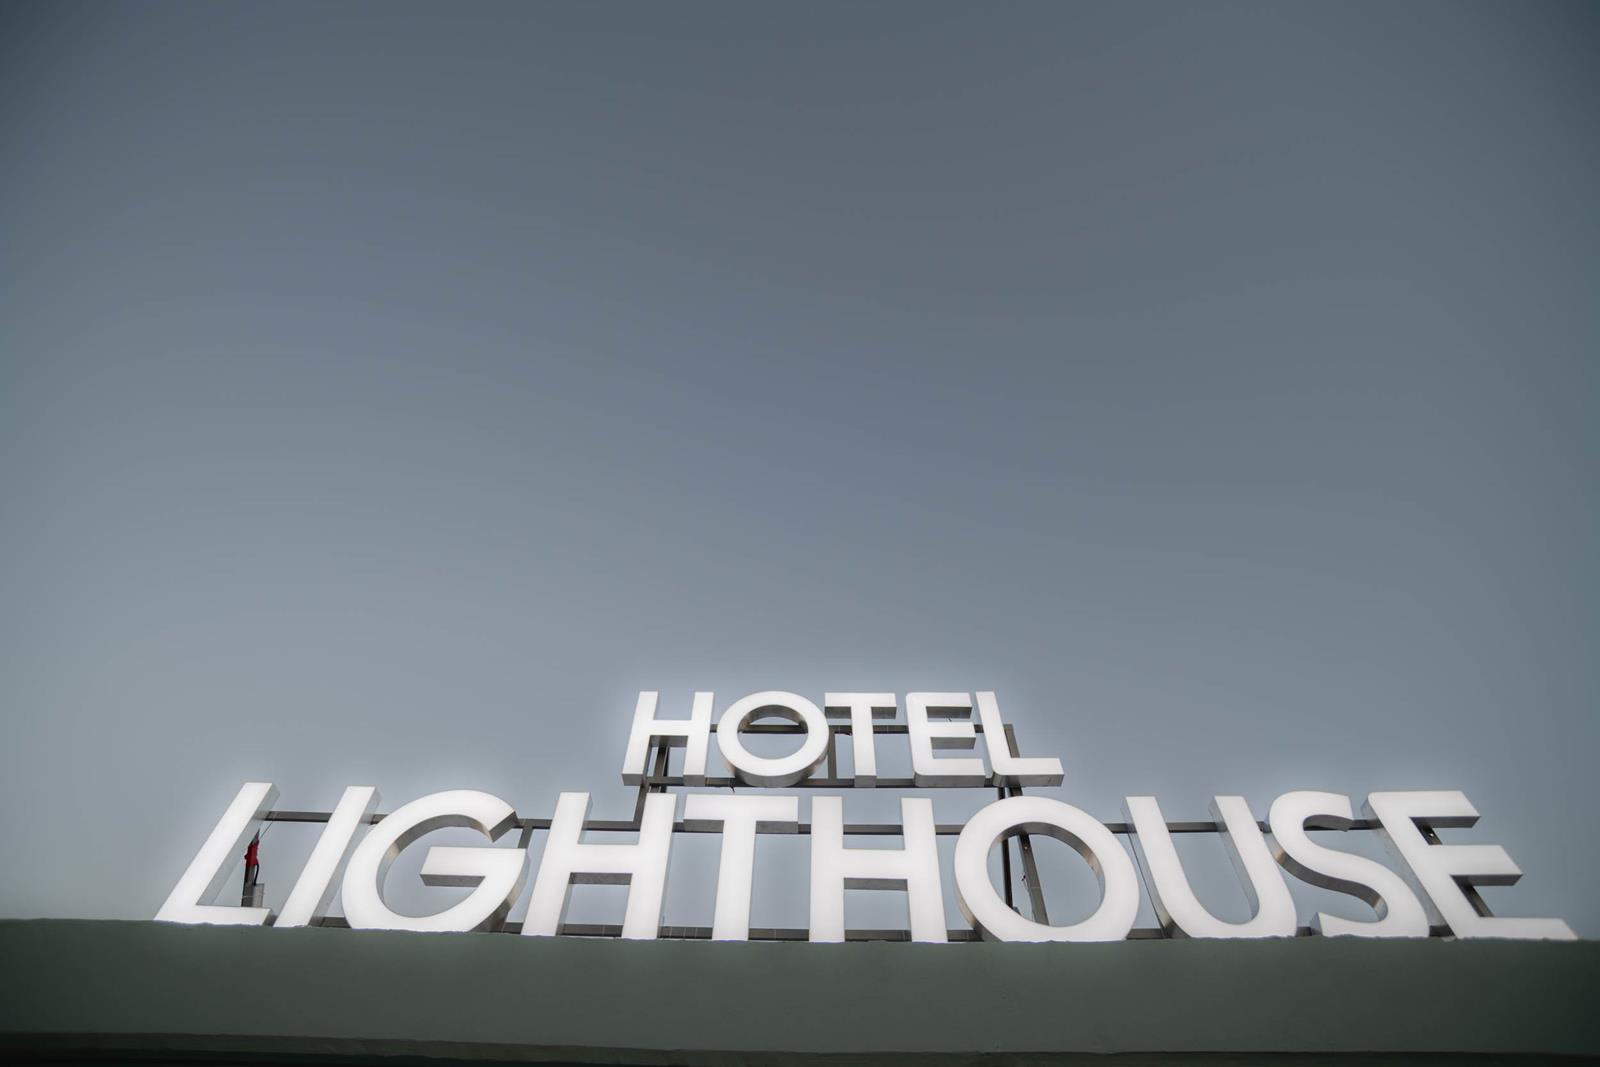 ξενοδοχεια στην αλεξανδρουπολη - Ξενοδοχείο Lighthouse Αλεξανδρούπολη